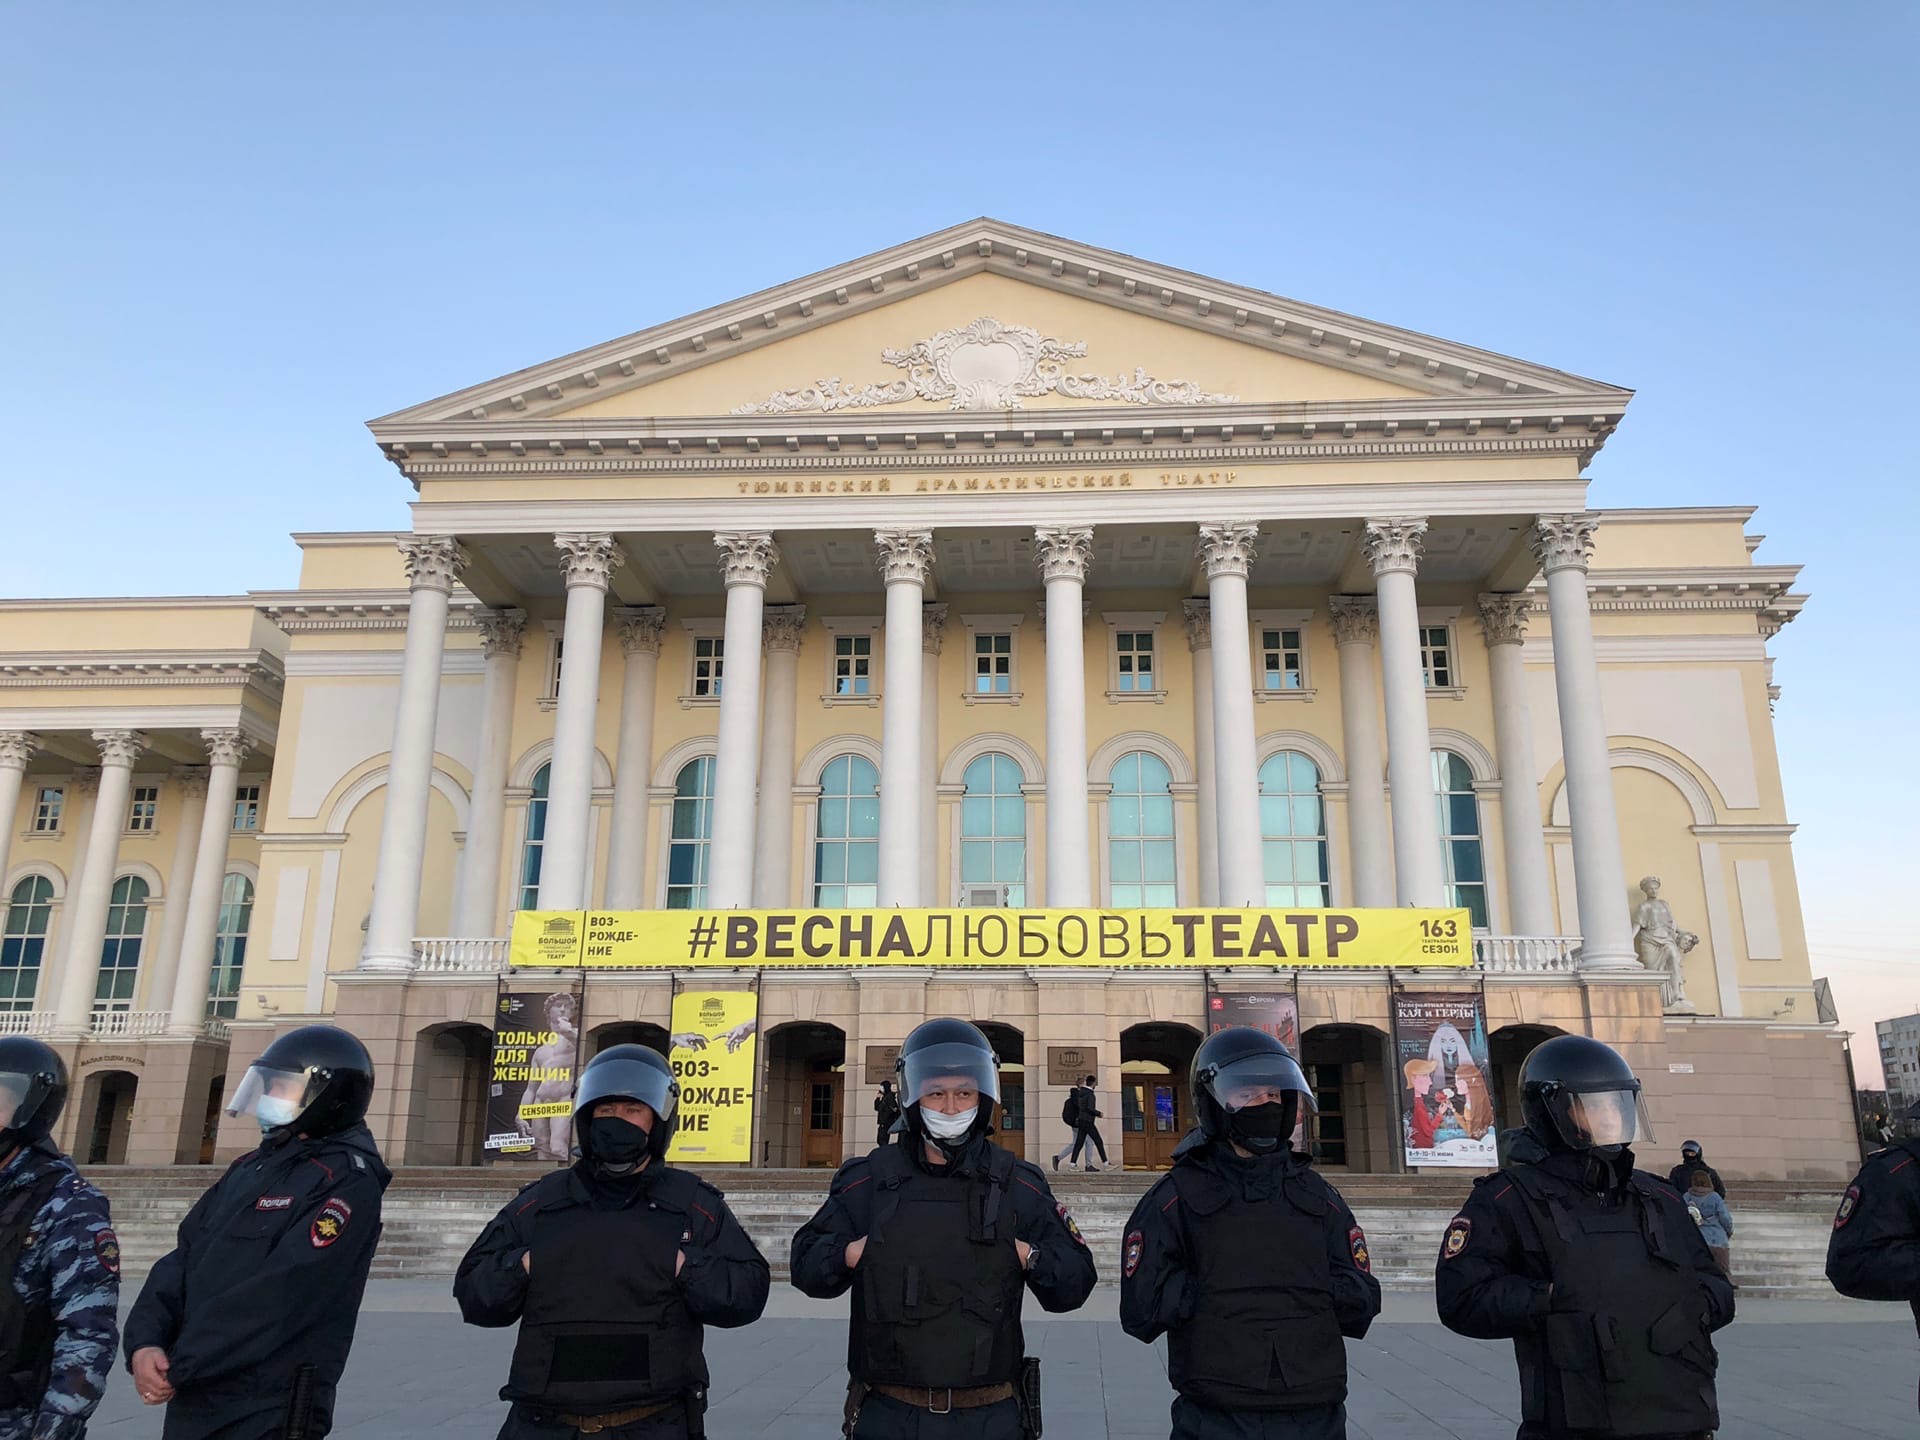 Весна, любовь и театр на митинге в поддержку Навального